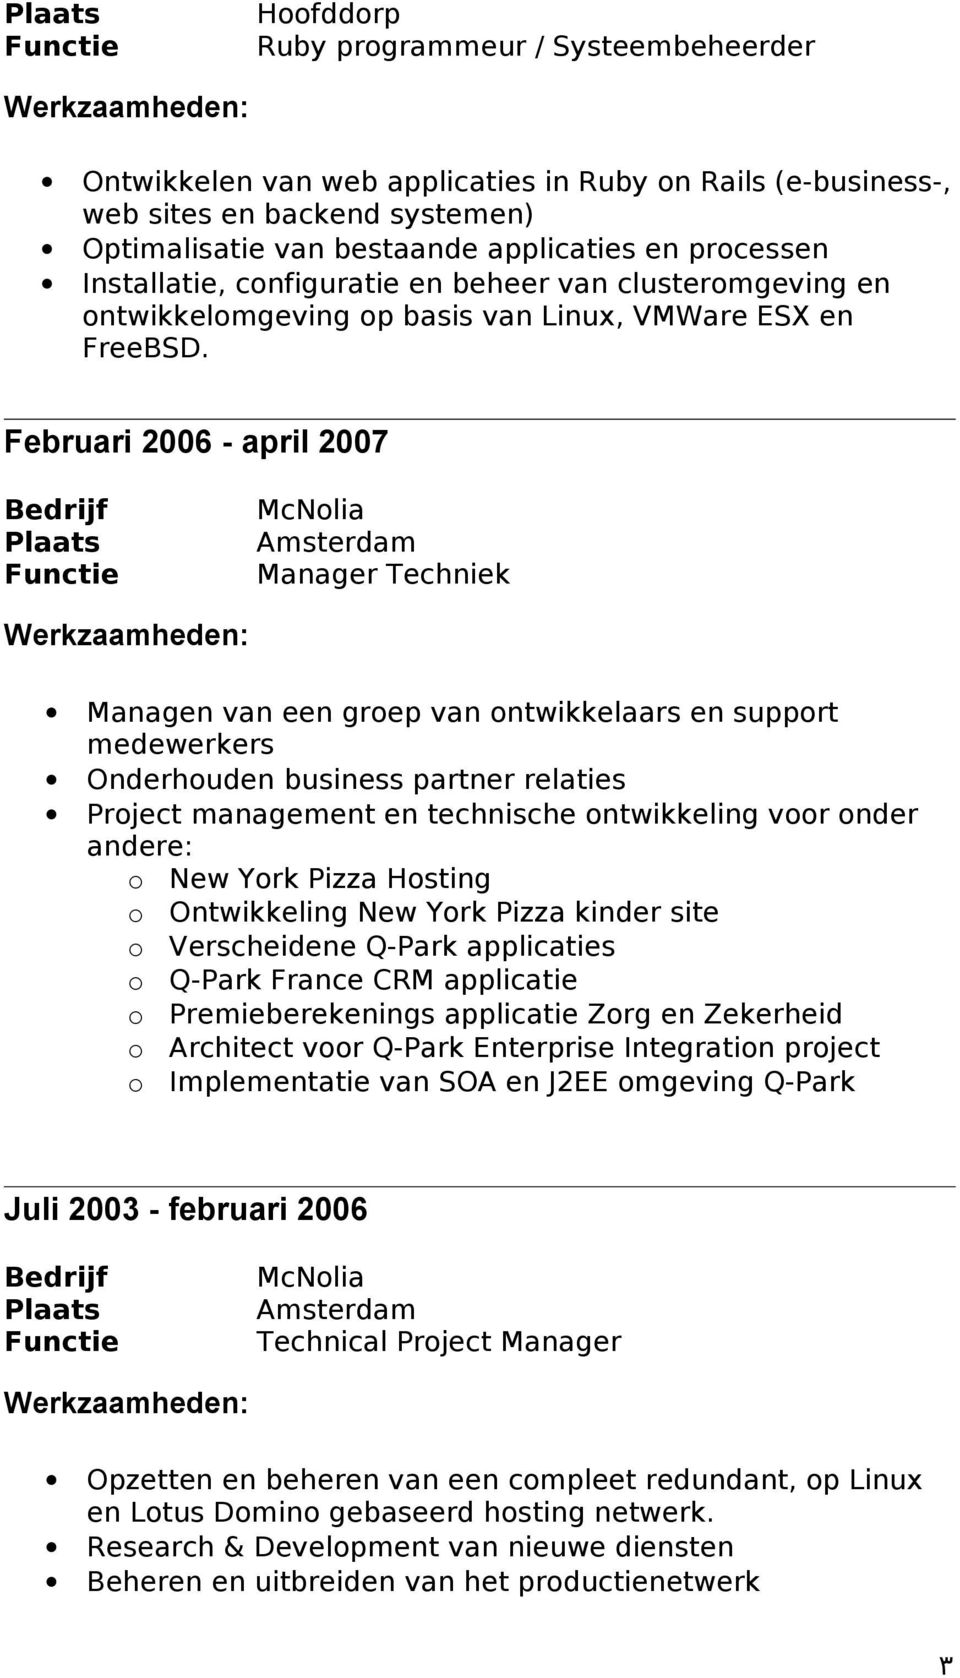 Februari 2006 - april 2007 McNolia Amsterdam Manager Techniek Managen van een groep van ontwikkelaars en support medewerkers Onderhouden business partner relaties Project management en technische